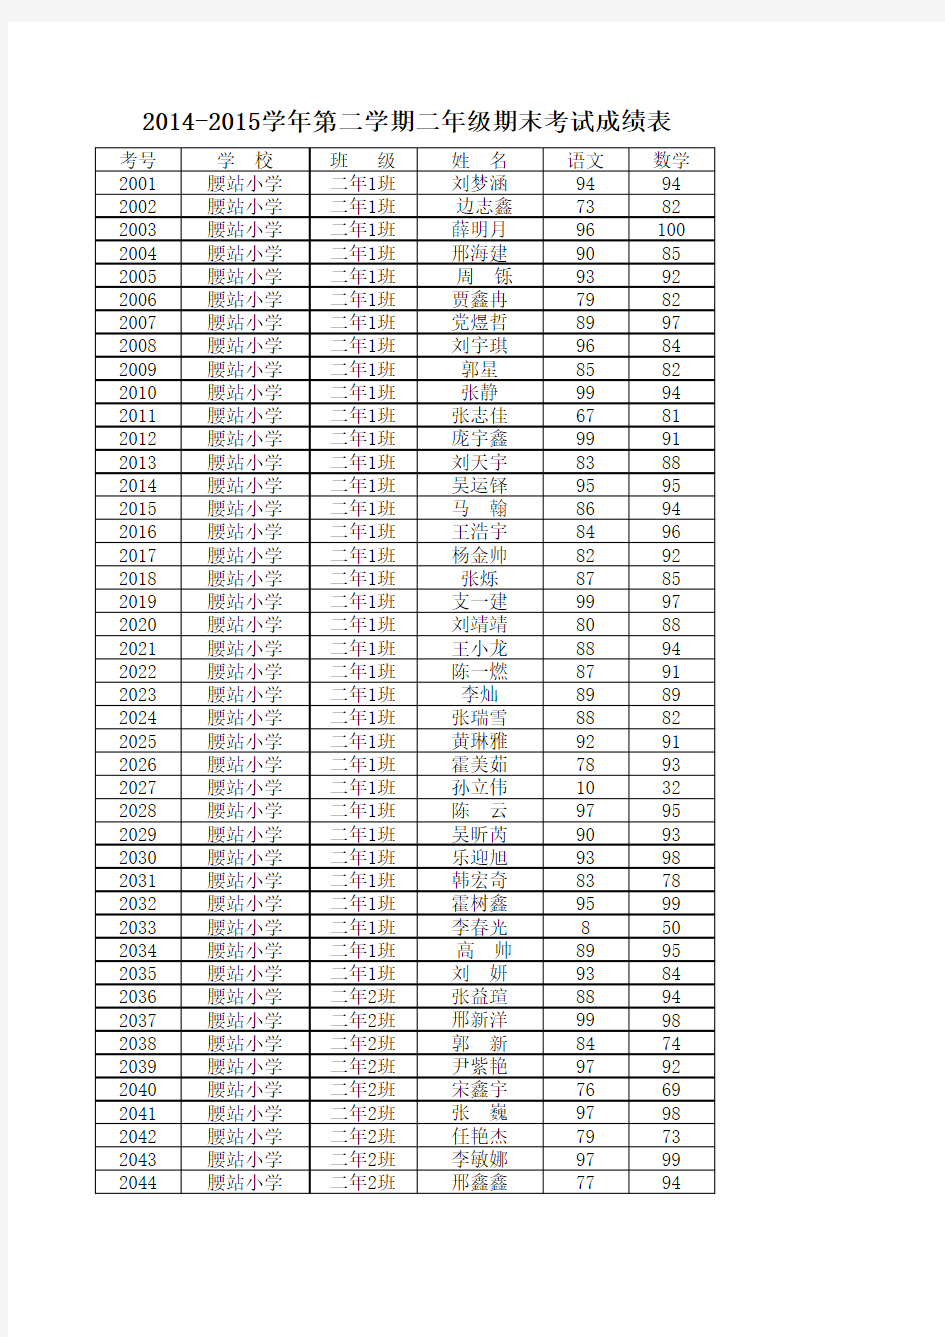 腰站学区2015年非毕业年级考试成绩表(汇总表) (1)